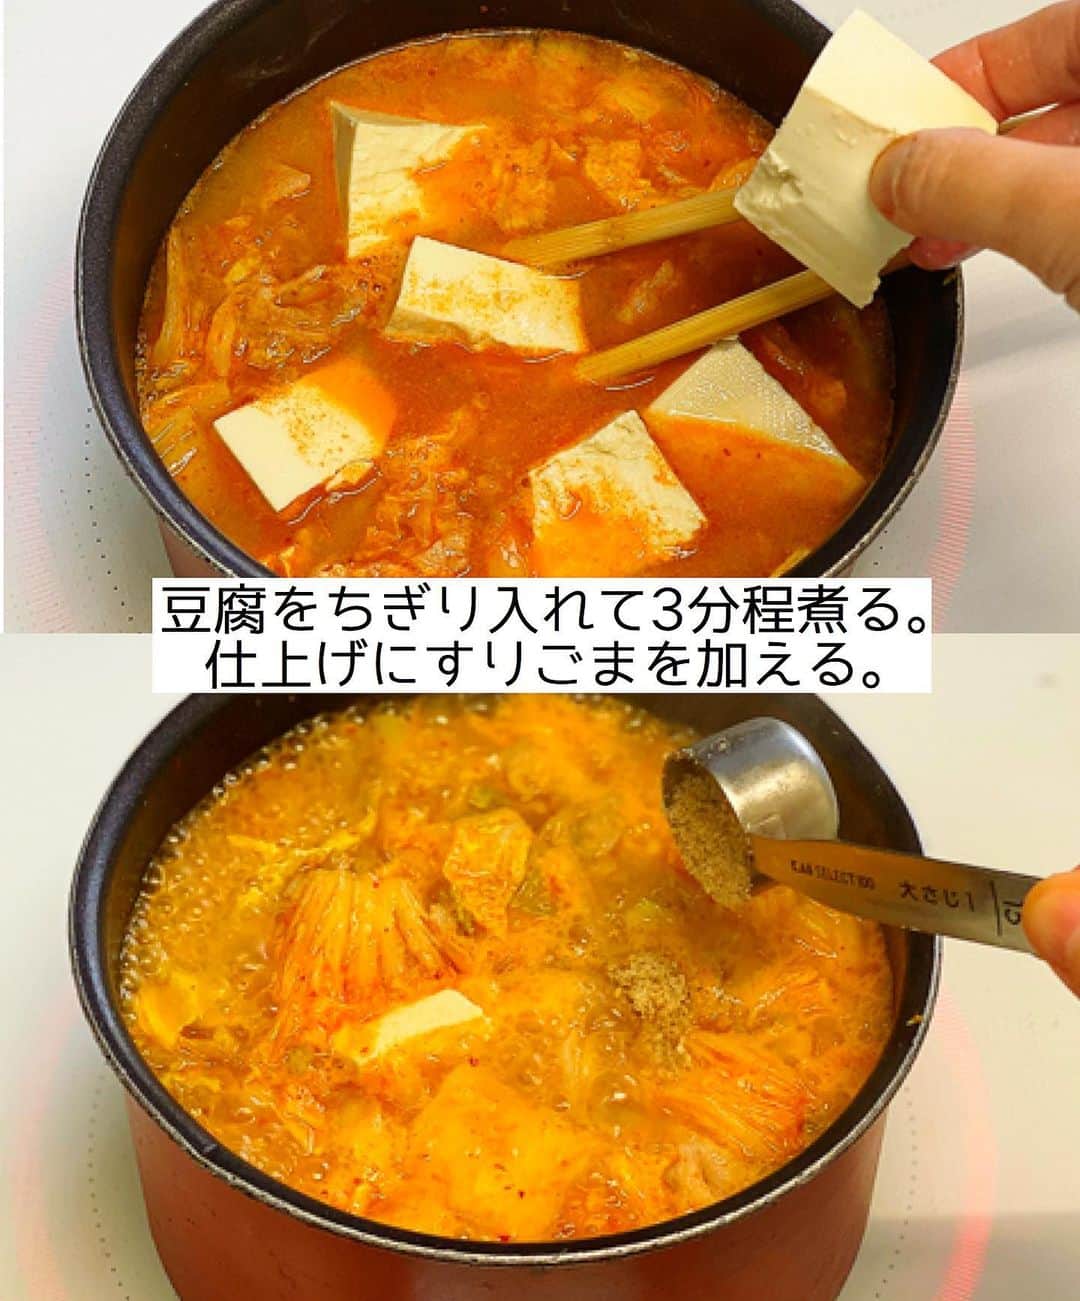 Mizuki【料理ブロガー・簡単レシピ】さんのインスタグラム写真 - (Mizuki【料理ブロガー・簡単レシピ】Instagram)「・﻿ 【#レシピ 】ーーーーーーーーーー﻿ ♡白菜入りチゲ風おかずスープ♡﻿ ーーーーーーーーーーーーーーーー﻿ ﻿ 　﻿ ﻿ おはようございます(*^^*)﻿ ﻿ 今日ご紹介させていただくのは﻿ \ 白菜入りチゲ風おかずスープ /﻿ ﻿ お鍋ひとつでできて﻿ 具沢山で栄養たっぷり♡﻿ 食べ応えもじゅうぶんで﻿ しっかりおかずになりますよ〜♩﻿ ﻿ さっと炒めて3分煮るだけ！の﻿ 超簡単レシピです(*´艸`)﻿ とってもごはんがすすむので﻿ よかったらお試し下さいね(*^^*)﻿ ﻿ ﻿ ﻿ ＿＿＿＿＿＿＿＿＿＿＿＿＿＿＿＿＿＿＿＿﻿ 【2〜3人分】﻿ 豚バラ薄切り肉...100g﻿ 白菜...100g﻿ 白菜キムチ...100g﻿ 木綿豆腐...1/2丁(150g)﻿ ごま油...小1﻿ ●水...500ml﻿ ●味噌...大1.5﻿ ●鶏がらスープ...小1﻿ すりごま...大1﻿ ﻿ 1.豚肉は4cm長さに切る。白菜は1cm幅に切る。﻿ 2.鍋にごま油を中火で熱し、1とキムチを炒める。豚肉に火が通ったら●を加えて味噌を溶かす。﻿ 3.豆腐をひと口大にちぎり入れて3分煮込み、仕上げにすりごまを加える。﻿ ￣￣￣￣￣￣￣￣￣￣￣￣￣￣￣￣￣￣￣￣﻿ ﻿ ﻿ ﻿ 《ポイント》﻿ ♦︎合わせ味噌(マルコメ)を使用しています♩﻿ ♦︎辛味はキムチだけで辛さは控えめです♩﻿ ♦︎豆腐は絹ごし豆腐でも♩﻿ ﻿ ﻿ ﻿ ﻿ ﻿ ﻿ ﻿ 💬💬💬﻿ お約束のチョコテリーヌを﻿ YouTubeにアップしました🥰﻿ ハイライトから飛べるので﻿ よかったらお試し下さいね💕﻿ YouTube→《奇跡のキッチン》で検索🔍﻿ ﻿ ﻿ ﻿ ﻿ ﻿ ﻿ ＿＿＿＿＿＿＿＿＿＿＿＿＿＿＿＿＿＿﻿ 🎁器プレゼントキャンペーン実施中🎁﻿ ￣￣￣￣￣￣￣￣￣￣￣￣￣￣￣￣￣￣﻿ おかげざで［今どき和食］が10刷増版となりました✨﻿ そこで心ばかりですが感謝の気持ちをお伝えしたく﻿ 《器プレゼントキャンペーンを実施中です♩》﻿ ▼ ▼ ▼﻿ ＿＿＿＿＿＿＿＿＿﻿ 【プレゼント内容】﻿ ￣￣￣￣￣￣￣￣￣﻿ 今人気の波佐見焼 大皿1枚﻿ もしくは小皿2枚セットを15名様に﻿ ＿＿＿＿＿＿＿＿＿﻿ 【応募方法】﻿ ￣￣￣￣￣￣￣￣￣﻿ ❶［Mizukiの今どき和食］から﻿ 1品ご自身で作った料理画像、﻿ もしくはカバー(表紙)画像を準備。﻿ ❷［#Mizukiの今どき和食器プレゼント ］﻿ のタグを付けて投稿！﻿ (以上で応募完了です😊　2/14〆切)﻿ _________________________________﻿ ﻿ 　﻿ ﻿ ﻿ ﻿ ﻿ ⭐️発売中⭐️﻿ ＿＿＿＿＿＿＿＿＿＿＿＿＿＿＿＿＿＿﻿ ホケミレシピの決定版♩﻿ \はじめてでも失敗しない/﻿ 📙#ホットケーキミックスのお菓子 📙﻿ ﻿ NHKまる得マガジンテキスト☆﻿ ホットケーキミックスで﻿ 📗絶品おやつ&意外なランチ📗﻿ ﻿ しんどくない献立、考えました♩﻿ \15分でいただきます/﻿ 📕#Mizukiの2品献立 📕﻿ ﻿ 和食をもっとカジュアルに♩﻿ \毎日のごはんがラクになる/﻿ 📘Mizukiの今どき和食 📘﻿ ﻿ 重版しました！﻿ ありがとうございます😭﻿ 📗ラクしておいしい！#1品晩ごはん 📗﻿ ﻿ 摂食障害から料理研究家になるまでを綴った﻿ はじめてのエッセイ本﻿ 📙#普通のおいしいをつくるひと 📙﻿ ￣￣￣￣￣￣￣￣￣￣￣￣￣￣￣￣￣￣￣﻿ ﻿ ﻿ ﻿ ﻿ ﻿ ＿＿＿＿＿＿＿＿＿＿＿＿＿＿＿＿＿＿﻿ レシピを作って下さった際や﻿ レシピ本についてのご投稿には﻿ タグ付け( @mizuki_31cafe )して﻿ お知らせいただけると嬉しいです😊💕﻿ ￣￣￣￣￣￣￣￣￣￣￣￣￣￣￣￣￣￣﻿ ﻿ ﻿ ﻿ ﻿ ﻿ #おかずスープ#白菜#キムチ#チゲ風#Mizuki#簡単レシピ#時短レシピ#節約レシピ#料理#フーディーテーブル#マカロニメイト#おうちごはん#デリスタグラマー#料理好きな人と繋がりたい#おうちごはんlover#写真好きな人と繋がりたい#foodpic#cooking#recipe#lin_stagrammer#foodporn#yummy#f52grams#チゲ風おかずスープm」2月12日 7時01分 - mizuki_31cafe